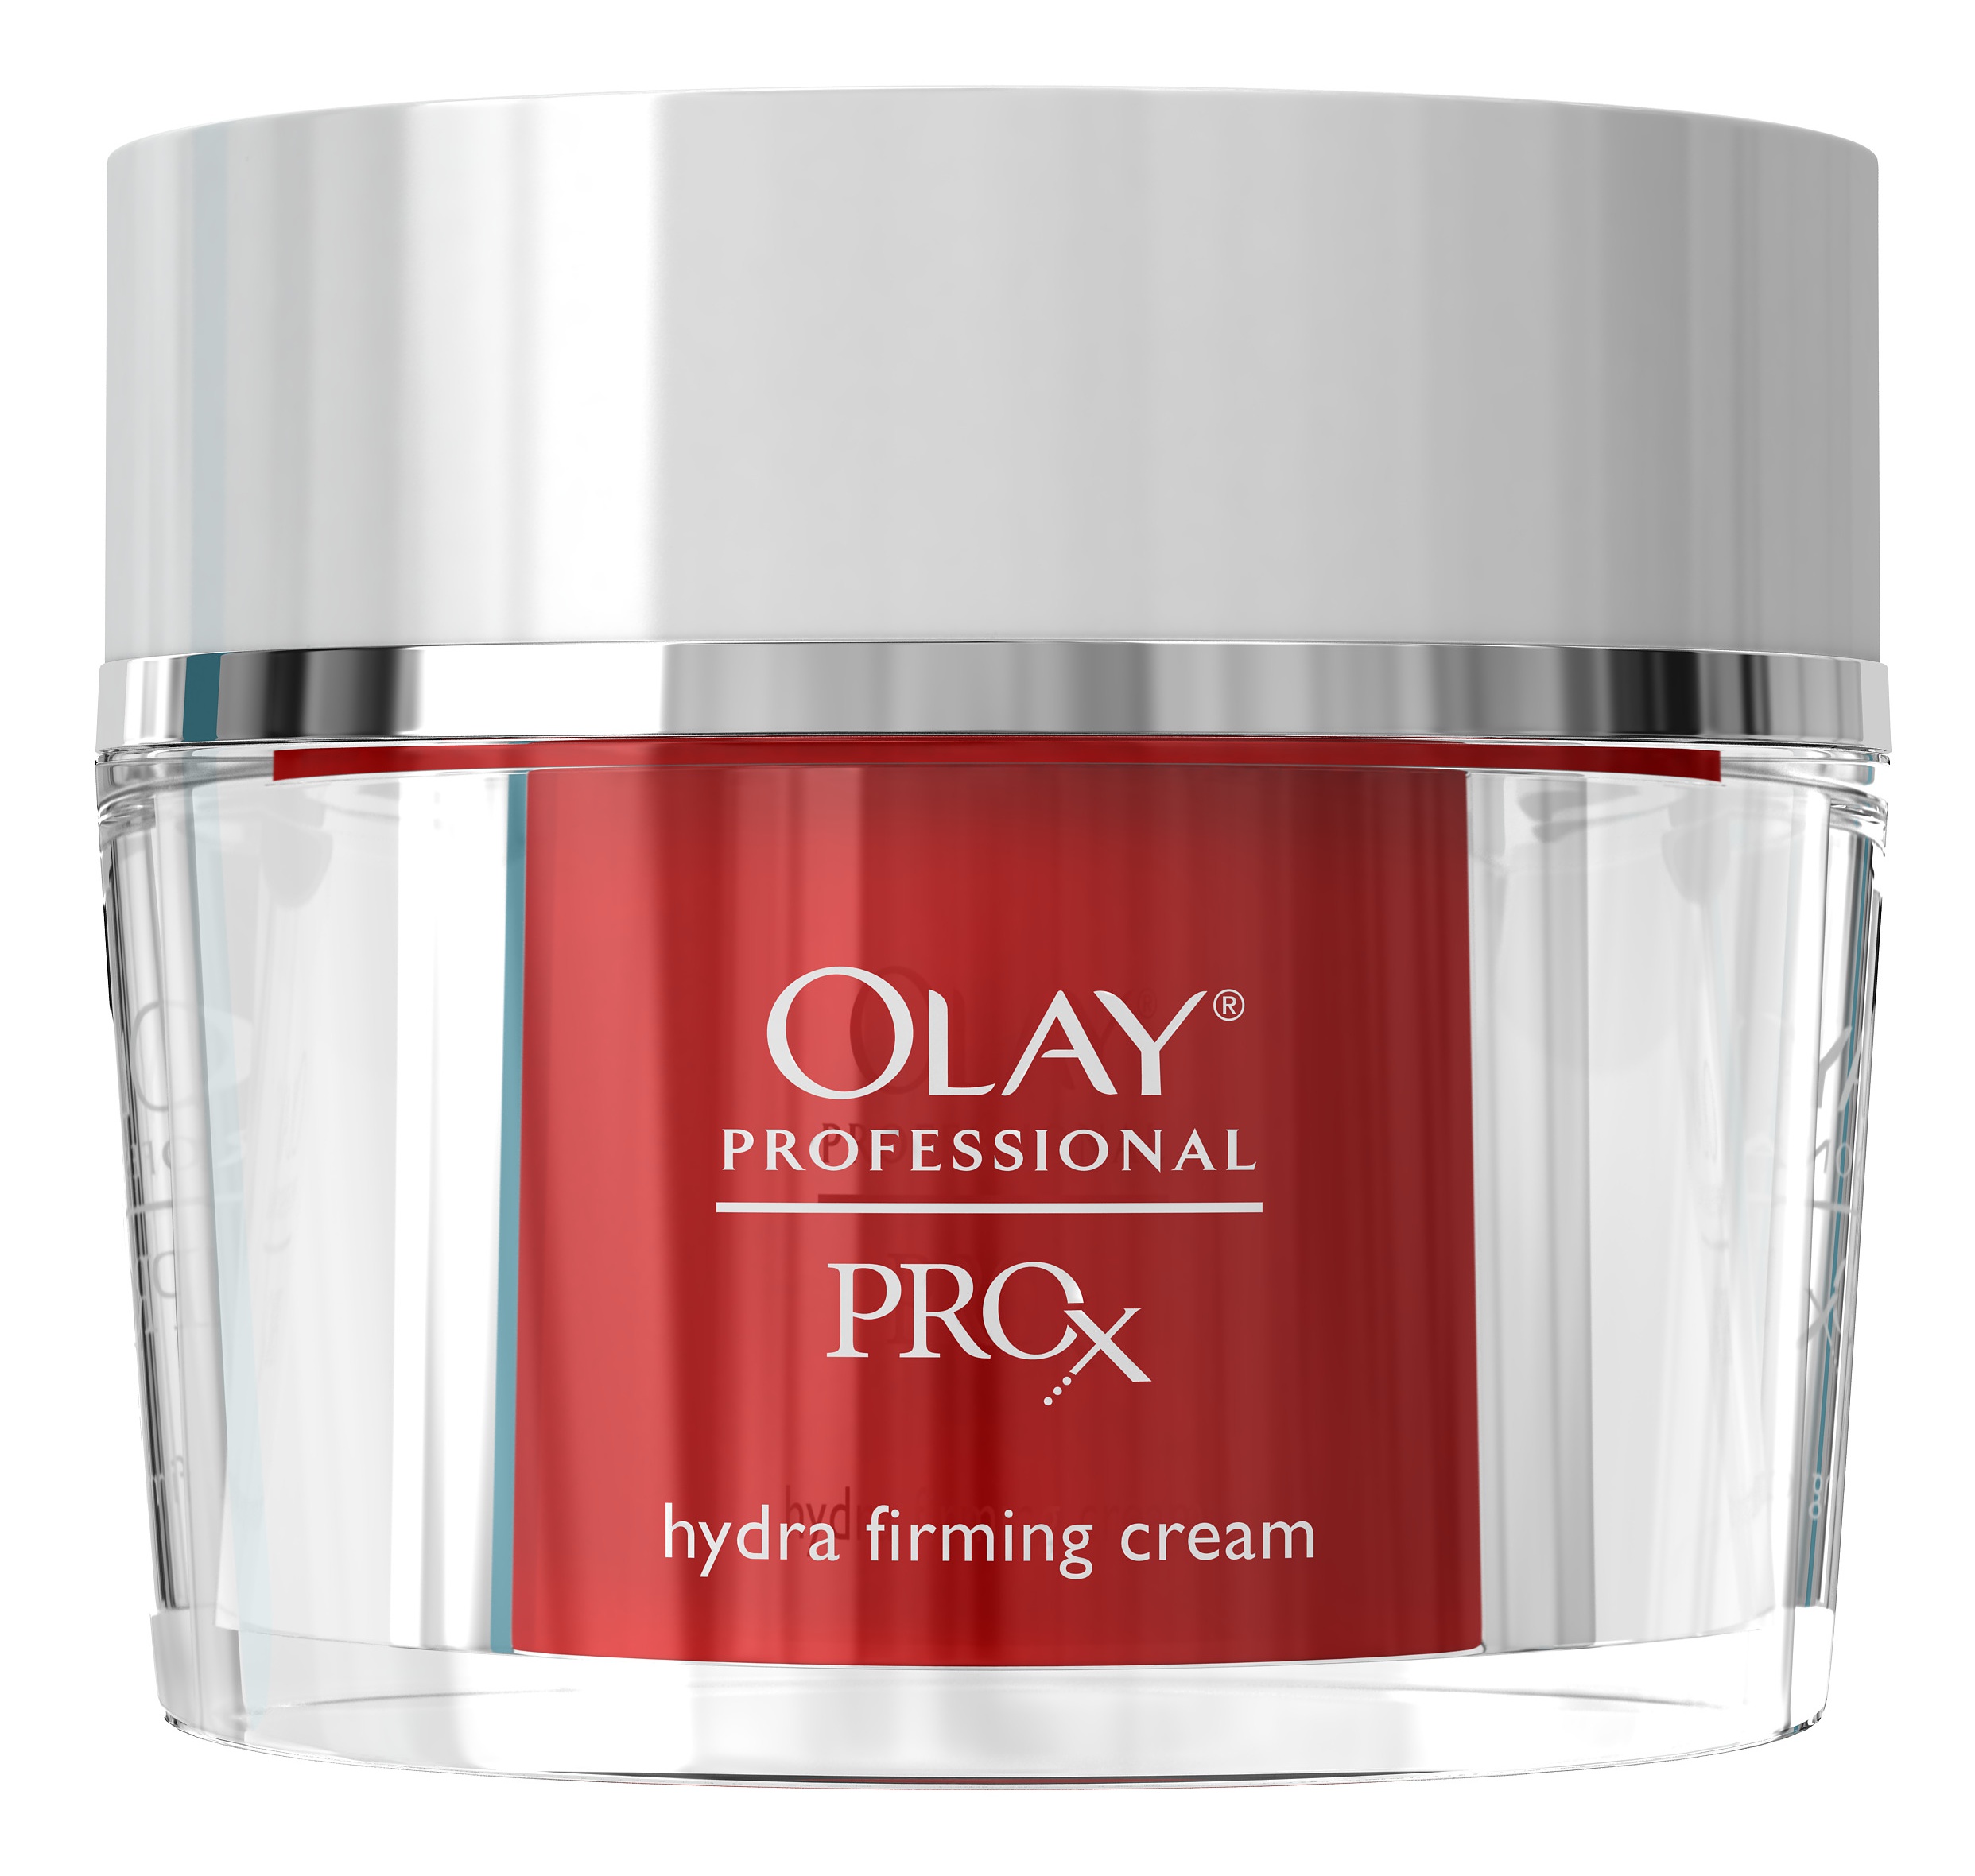 Olay ProX Hydra Firming Cream